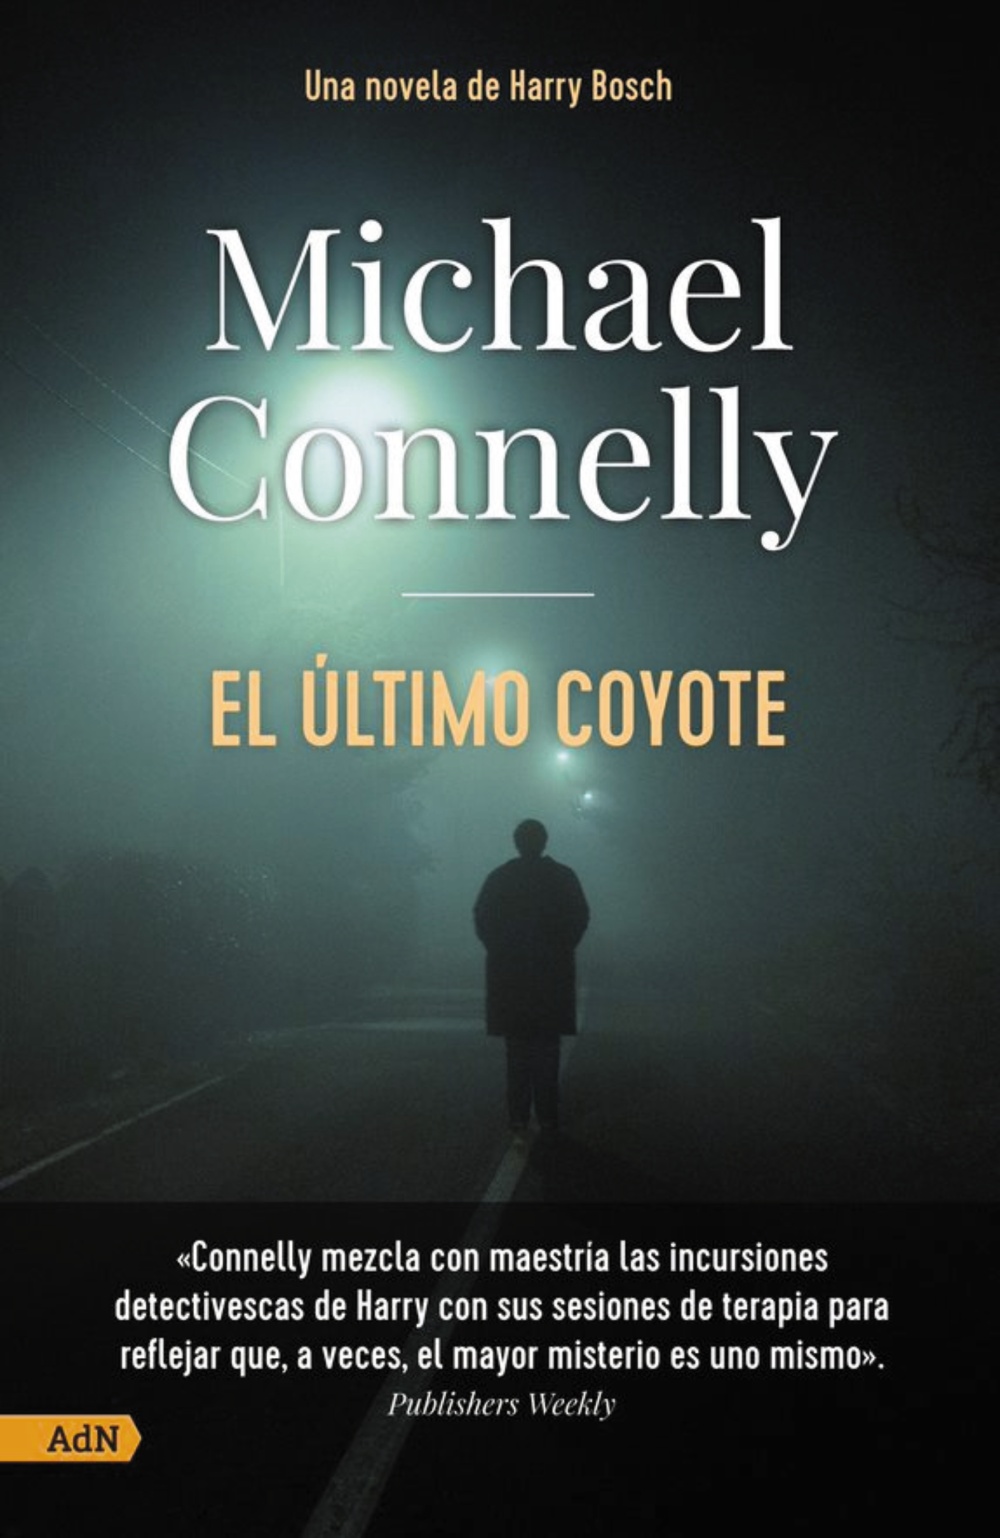 AdN publica El camino de la resurrección, la nueva novela de Michael  Connelly